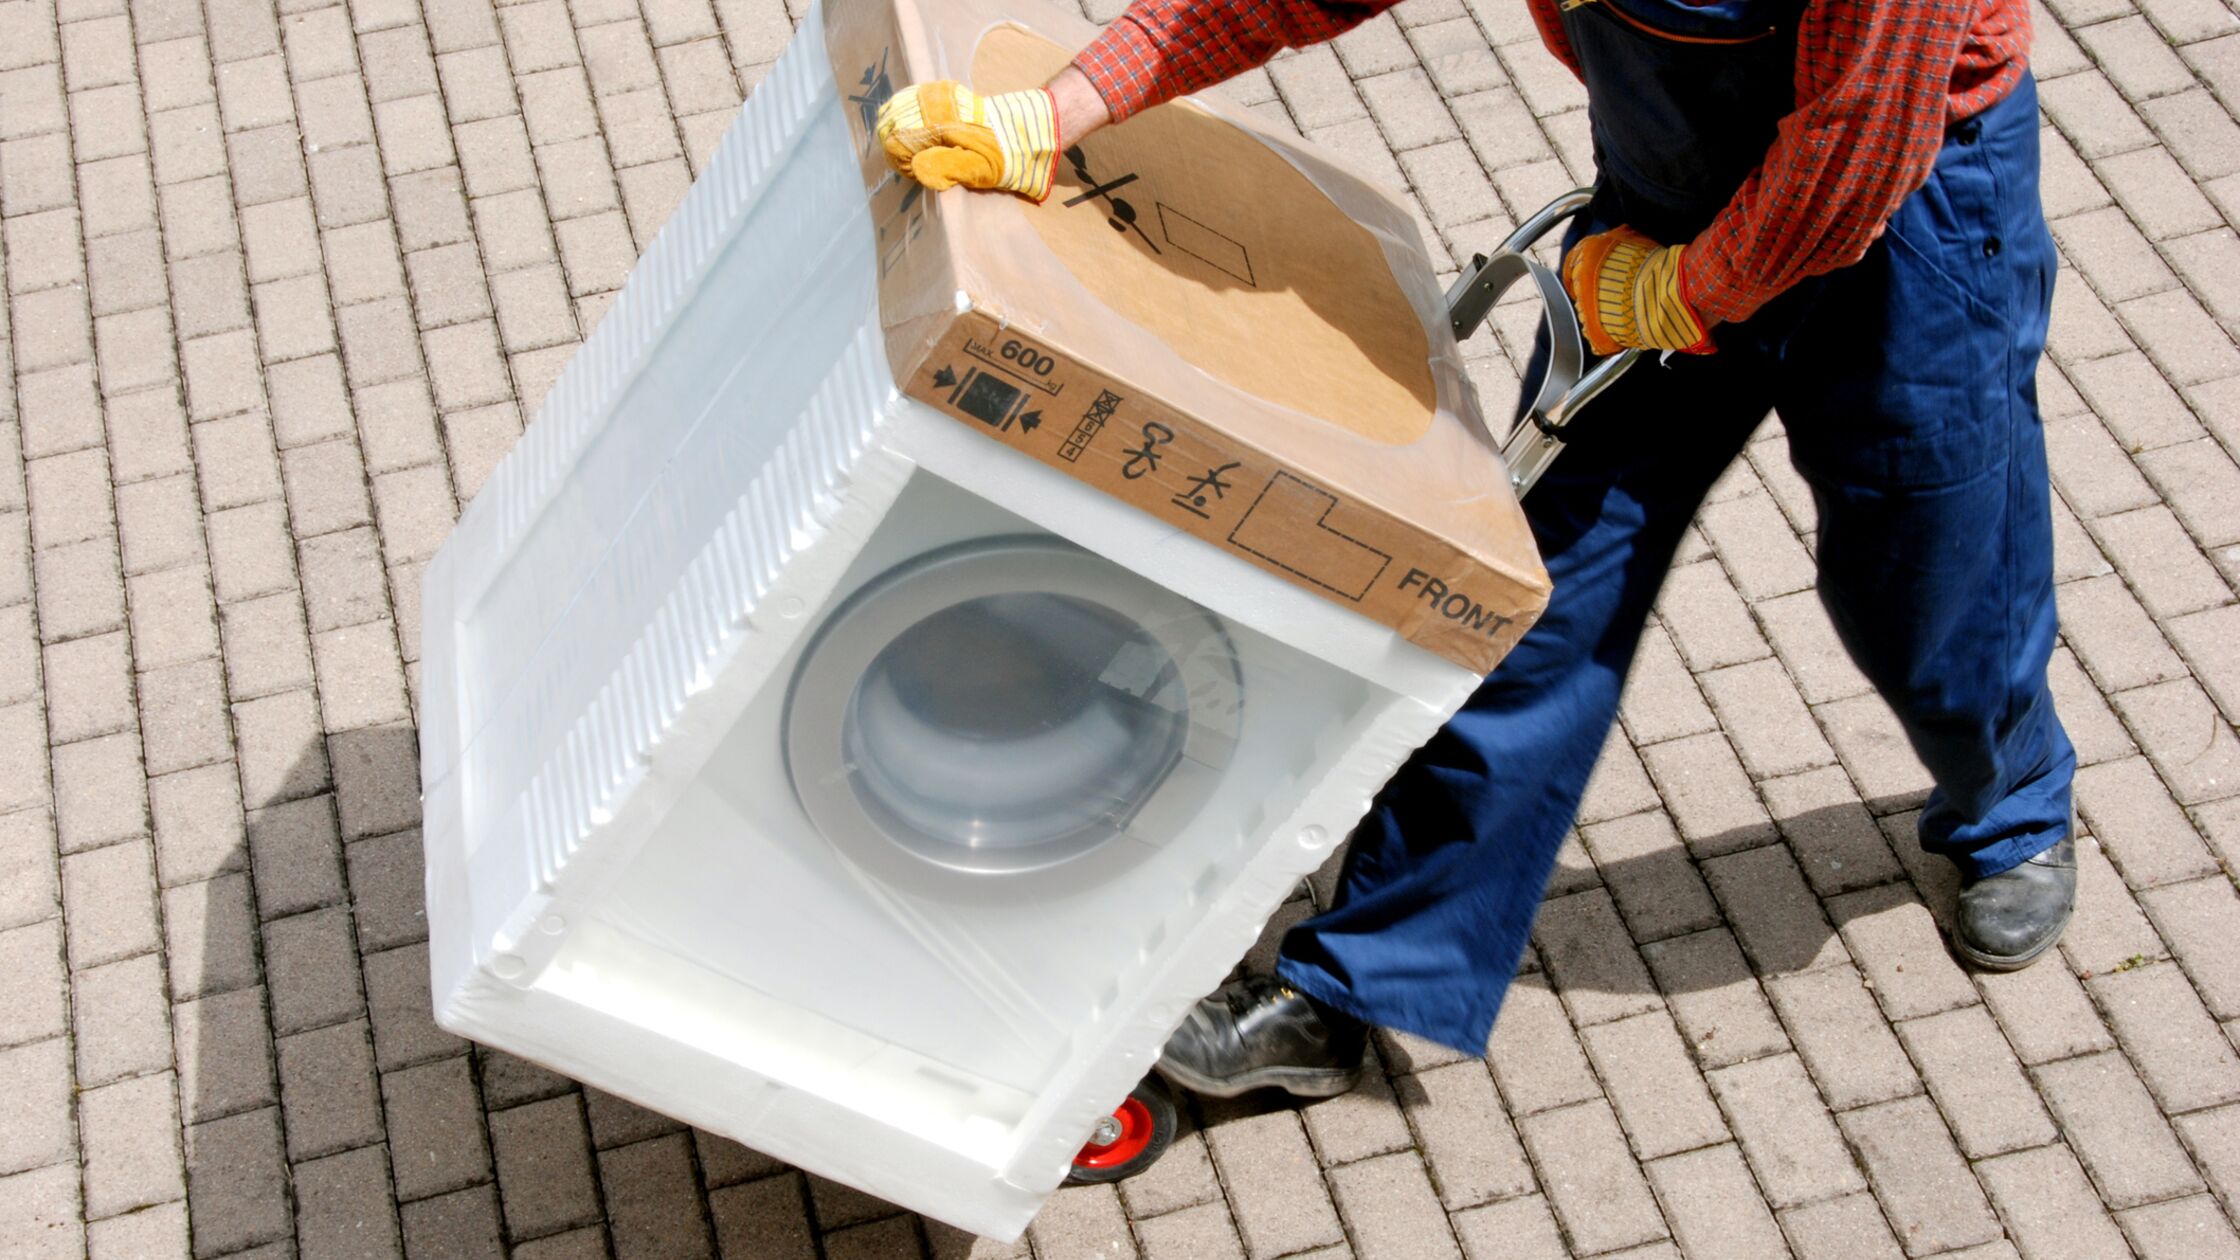 Waschmaschine transportieren: So geht's sicher in die neue Wohnung